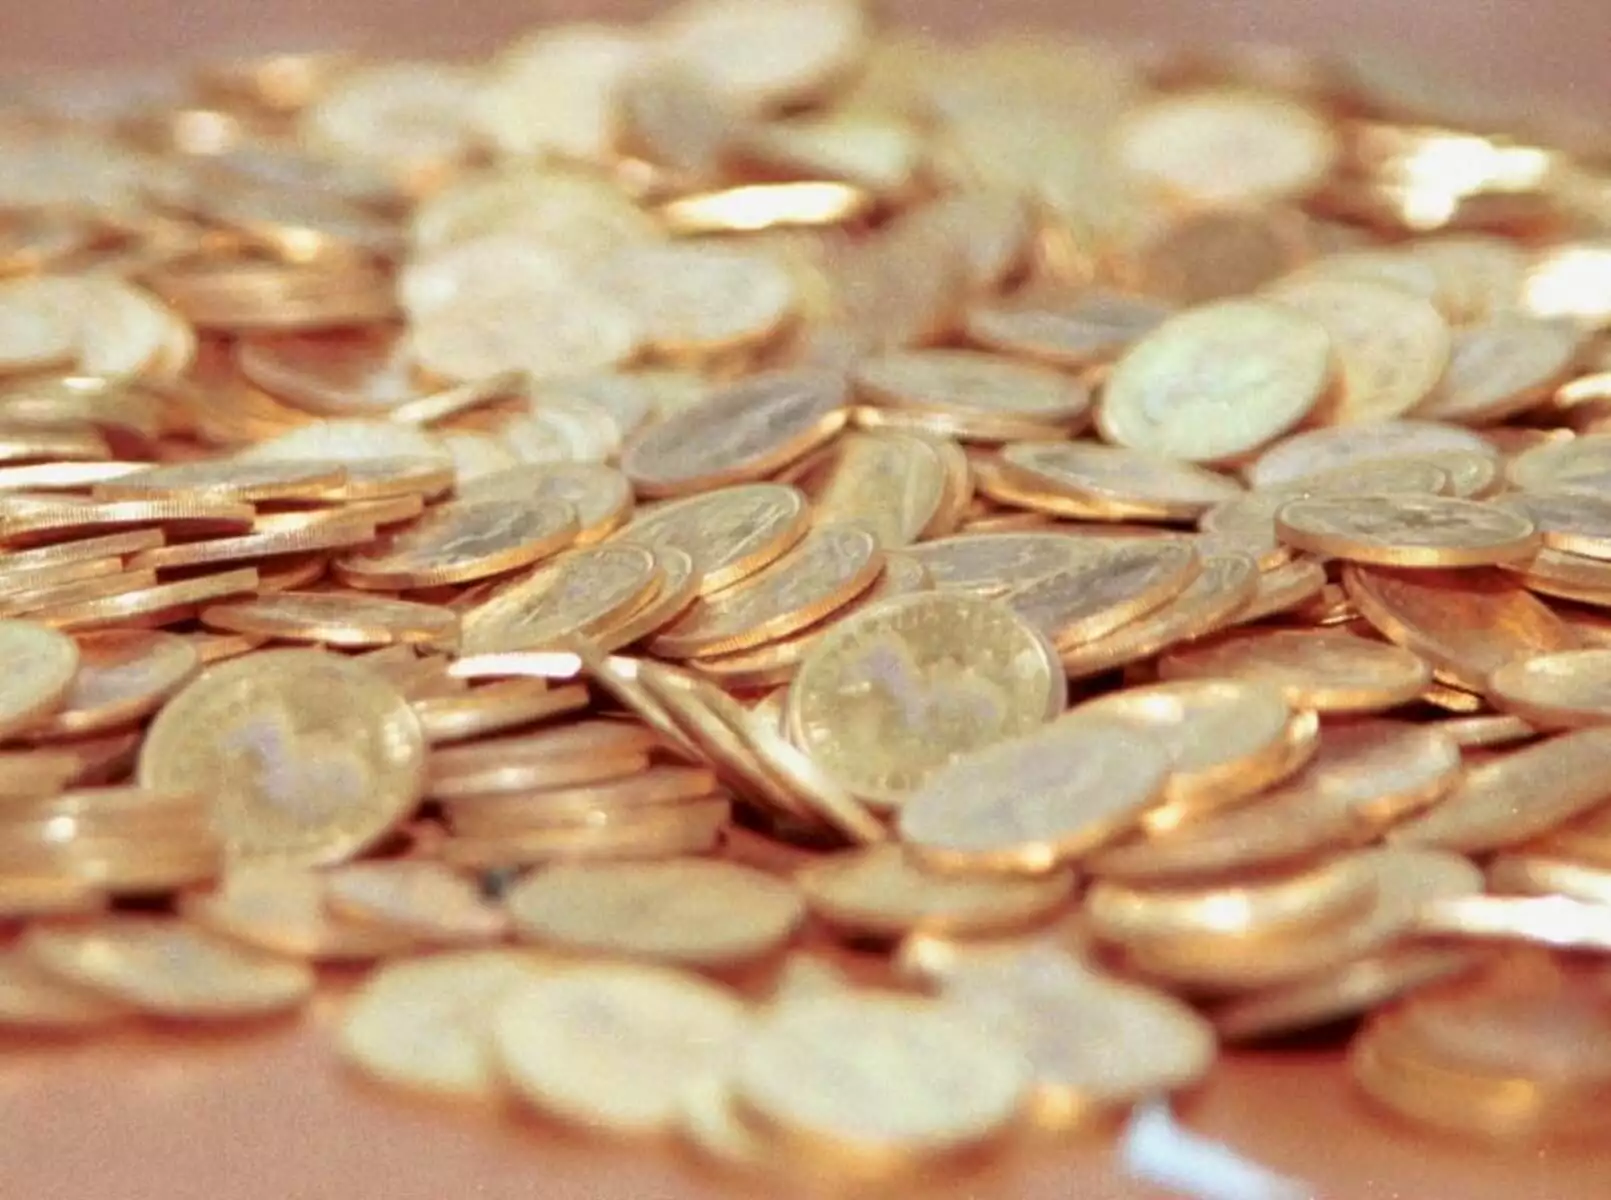 Έκλεψαν 32 χρυσές λίρες από σπίτι Τρικαλινού – Εξιχνιάστηκε η υπόθεση από την Ασφάλεια